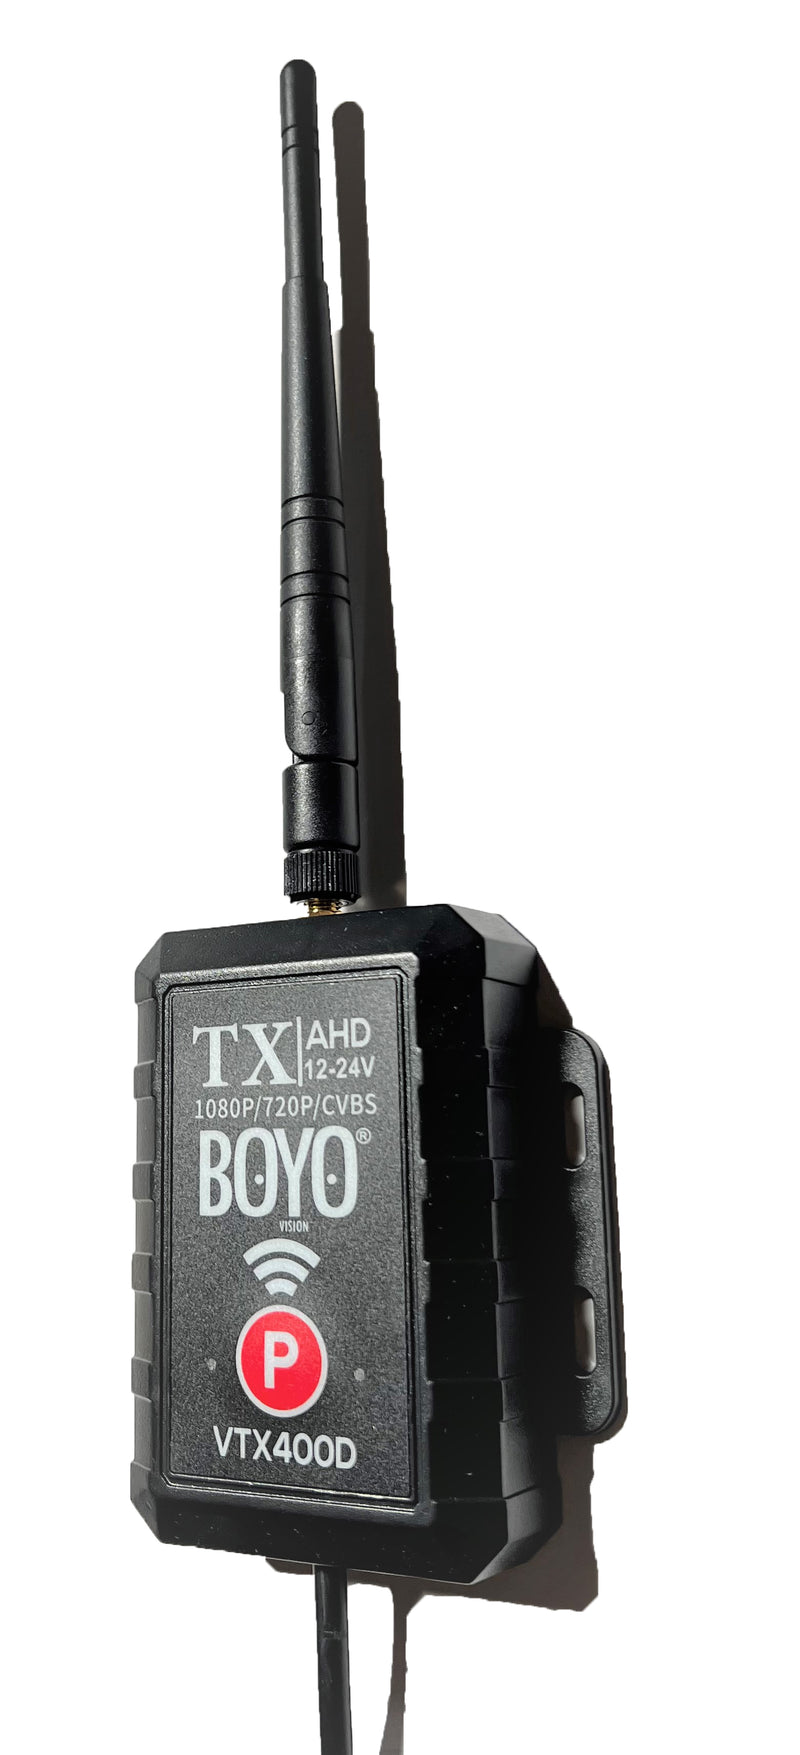 BOYO VTX400D - 2.4 GHz AHD Wireless Transmitter and Receiver